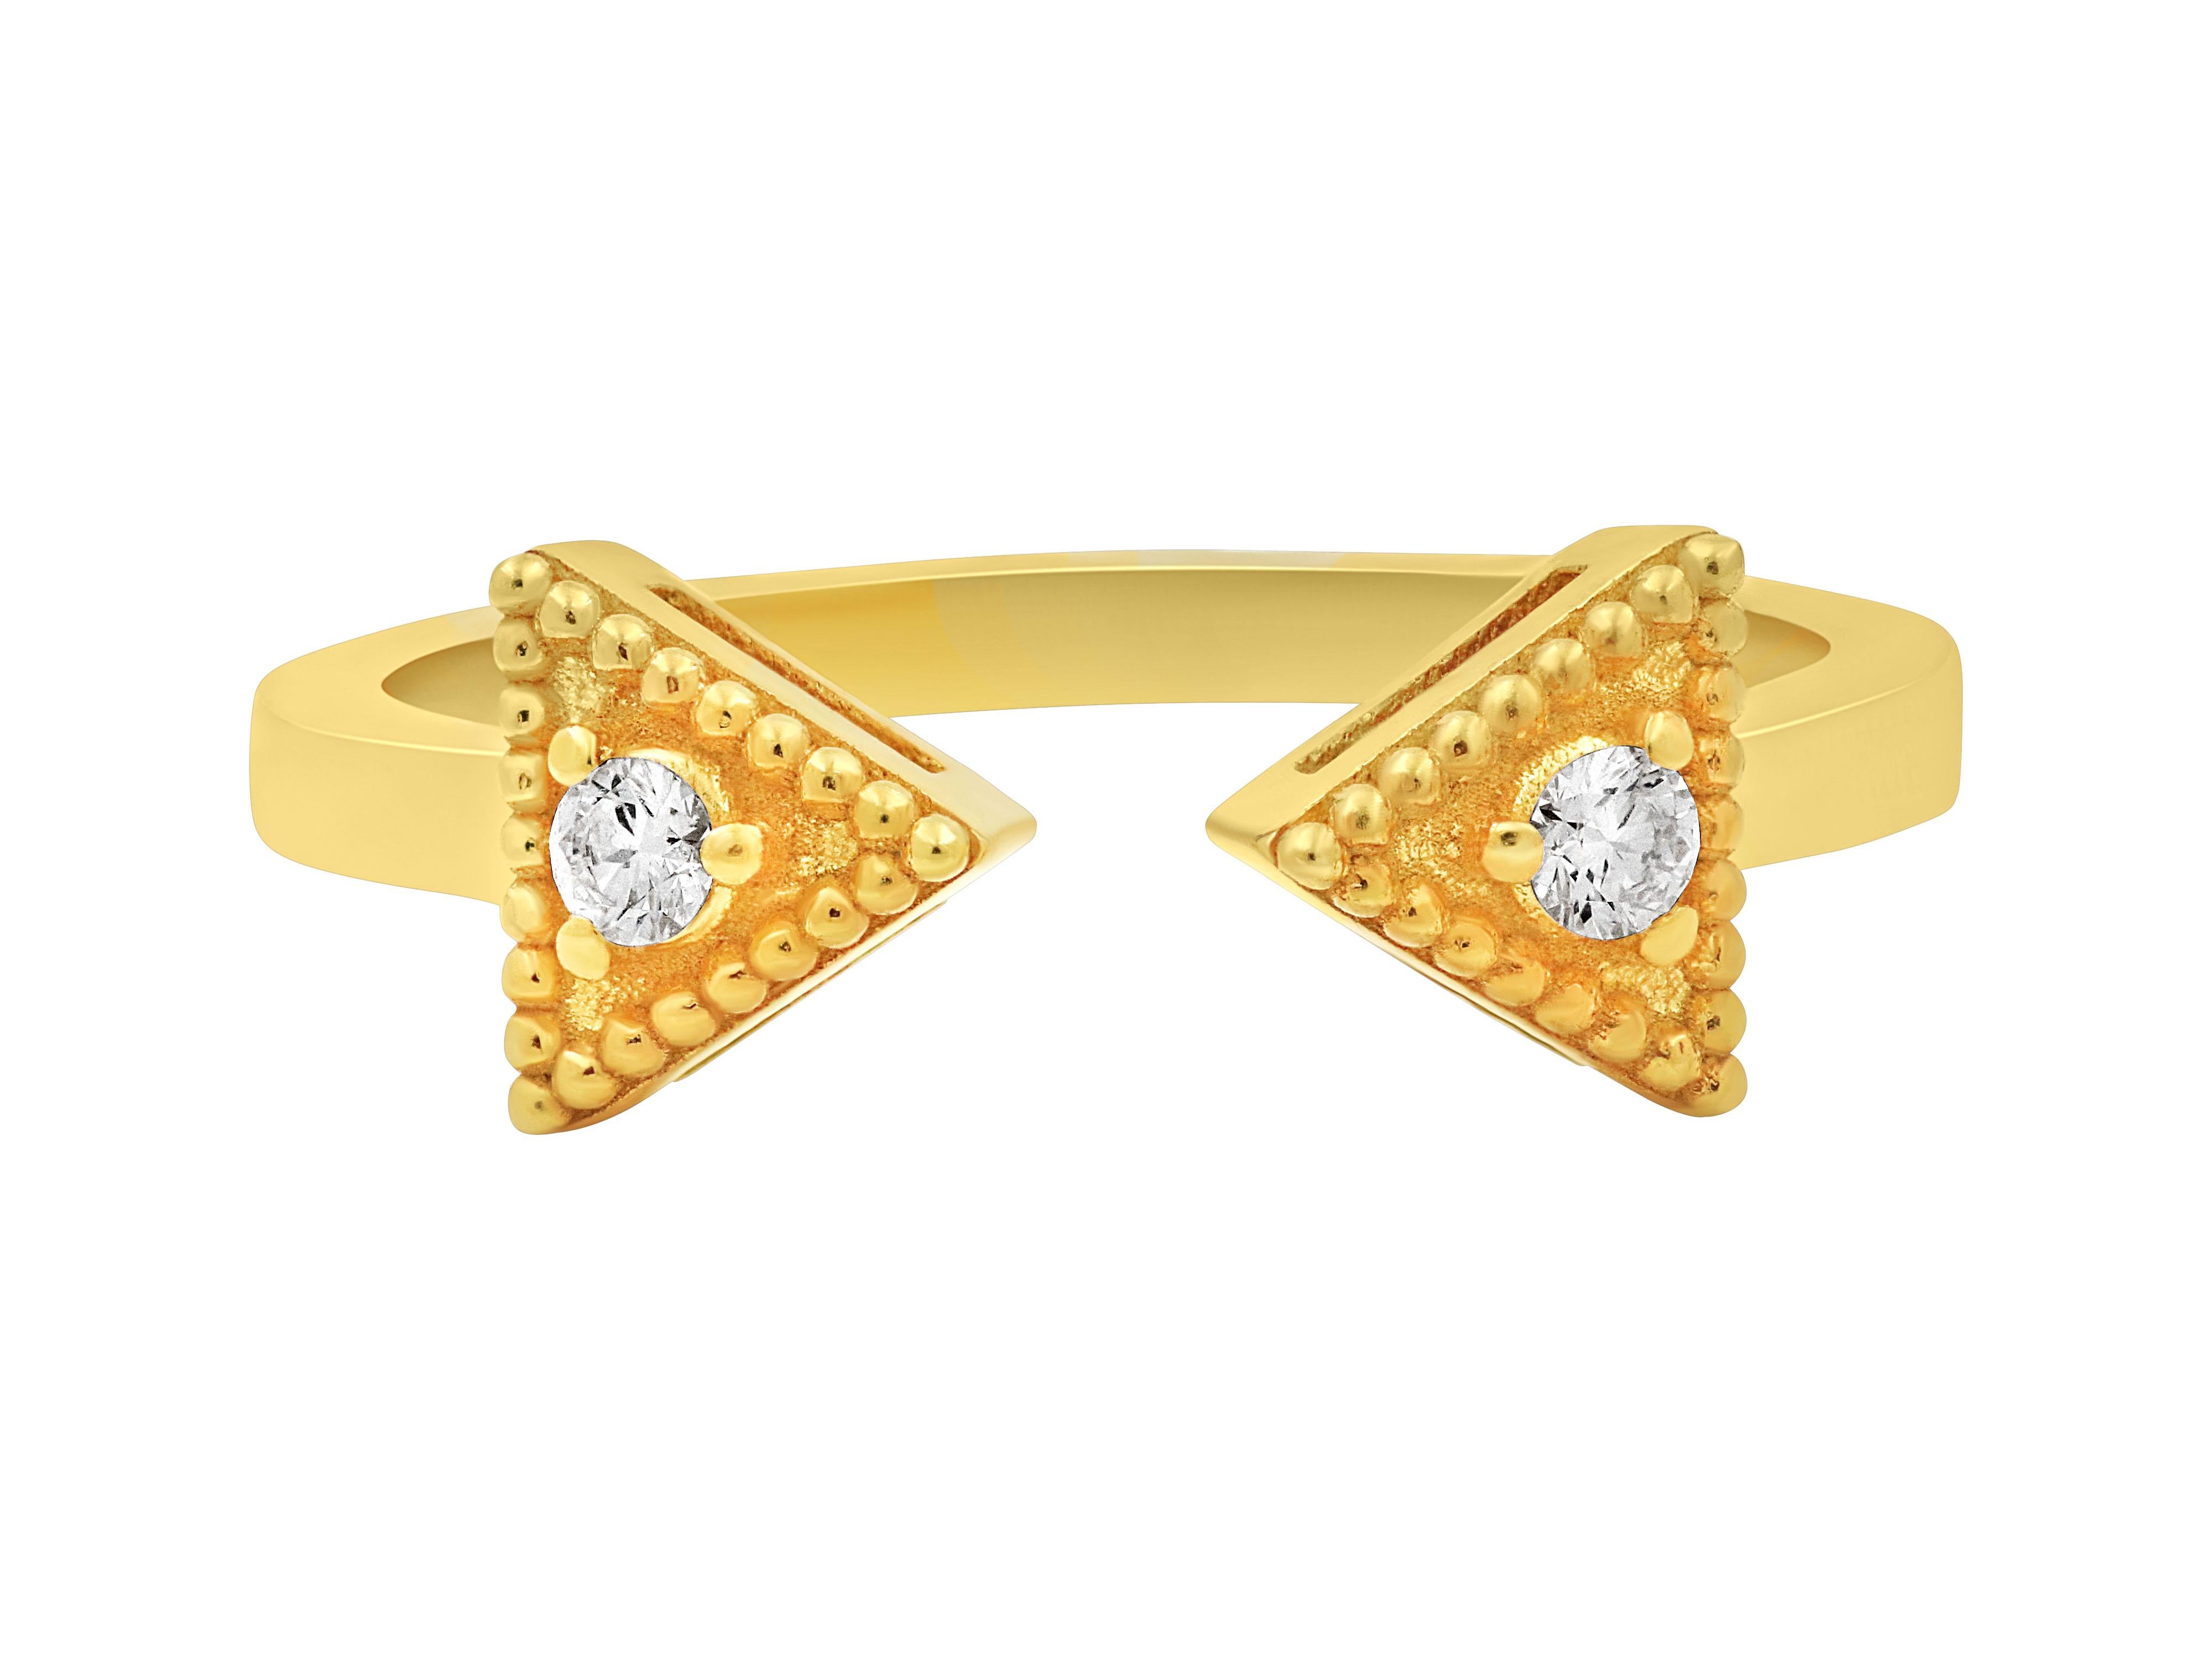 Granulierter neoklassischer Ring aus 18k Gold mit 0,08 Karat Brillant  geschliffene Diamanten, die klassische Ästhetik mit modernen Techniken verbinden. Das neoklassische Design des Rings ist von der antiken griechischen Kunst inspiriert und